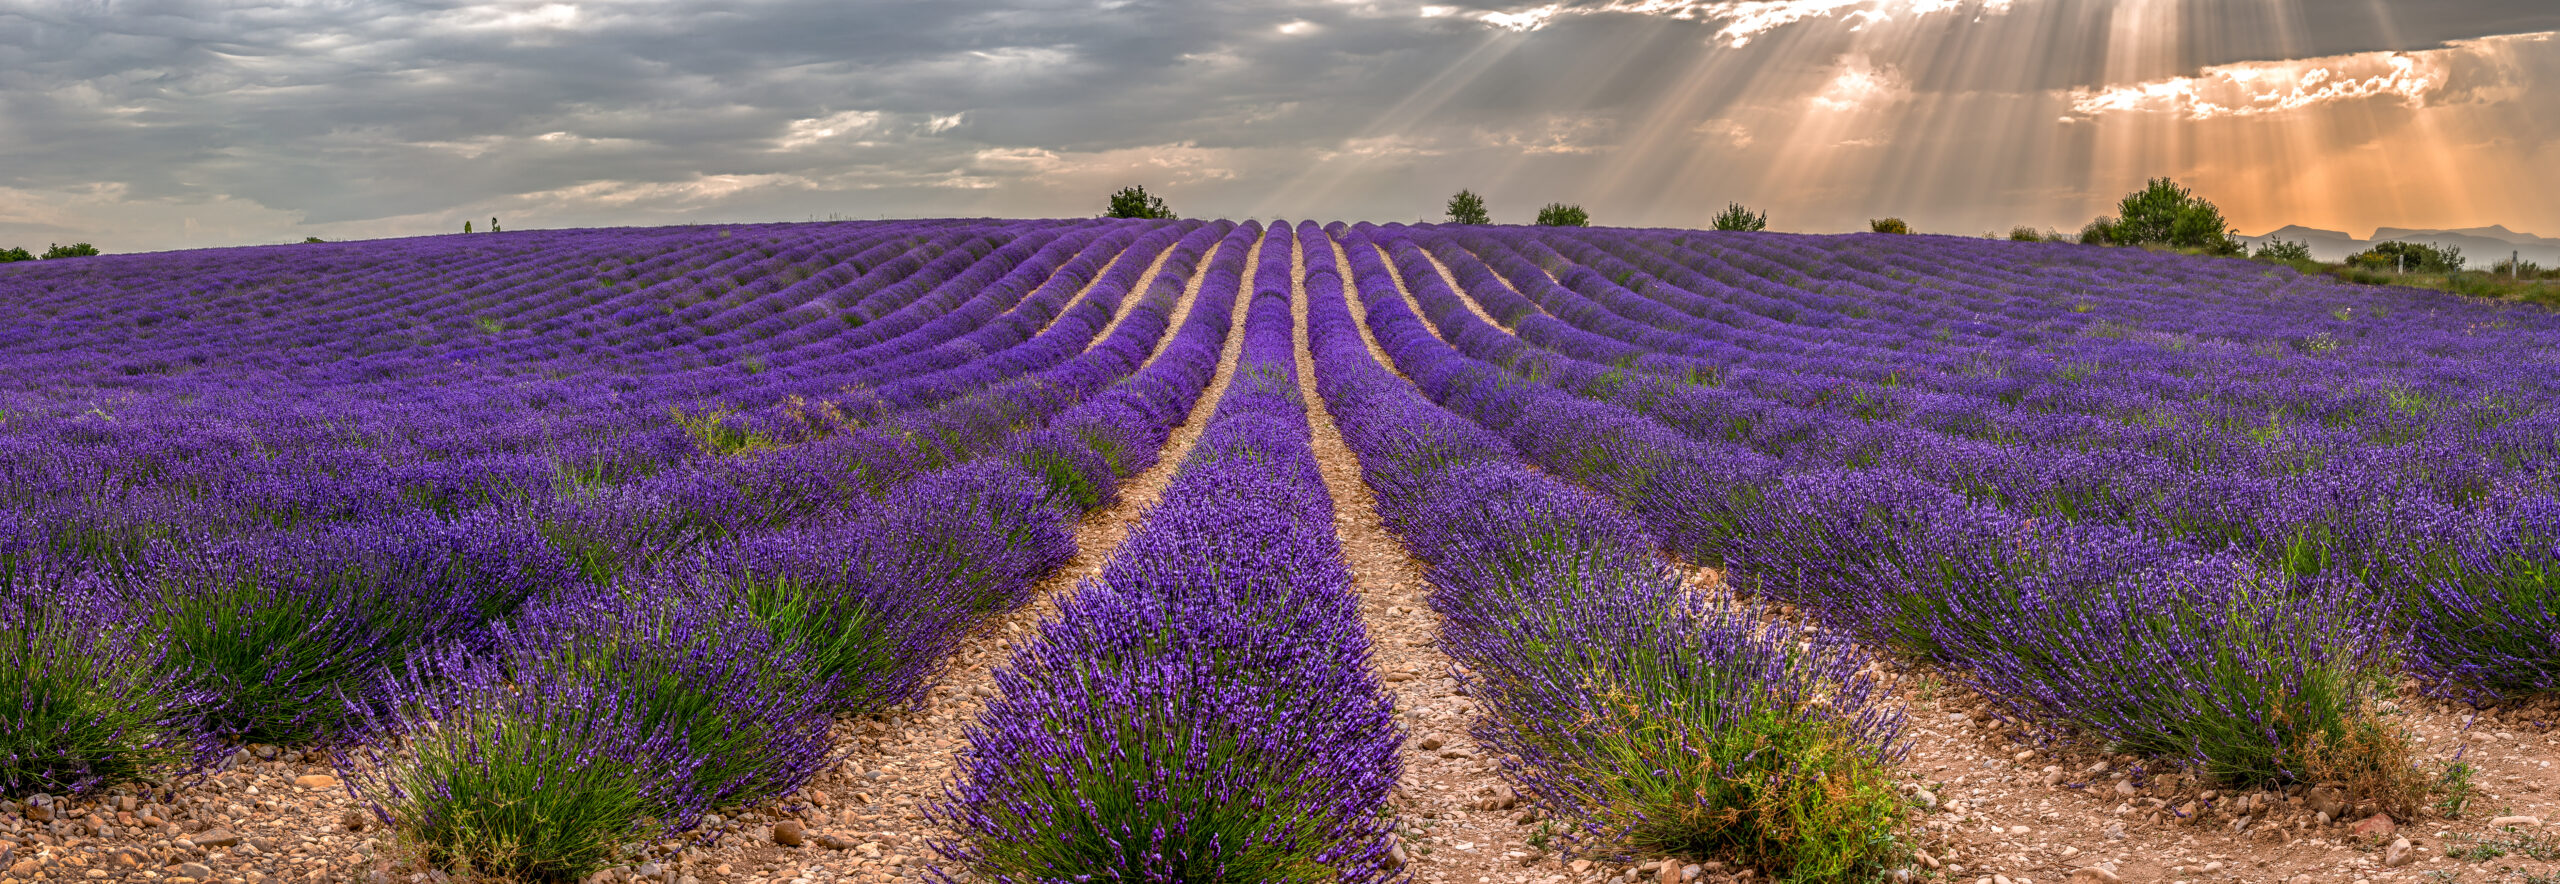 Franța este principala națiune agricolă a UE, reprezentând mai mult de o cincime din valoarea totală a producției. Sursa foto: dreamstime